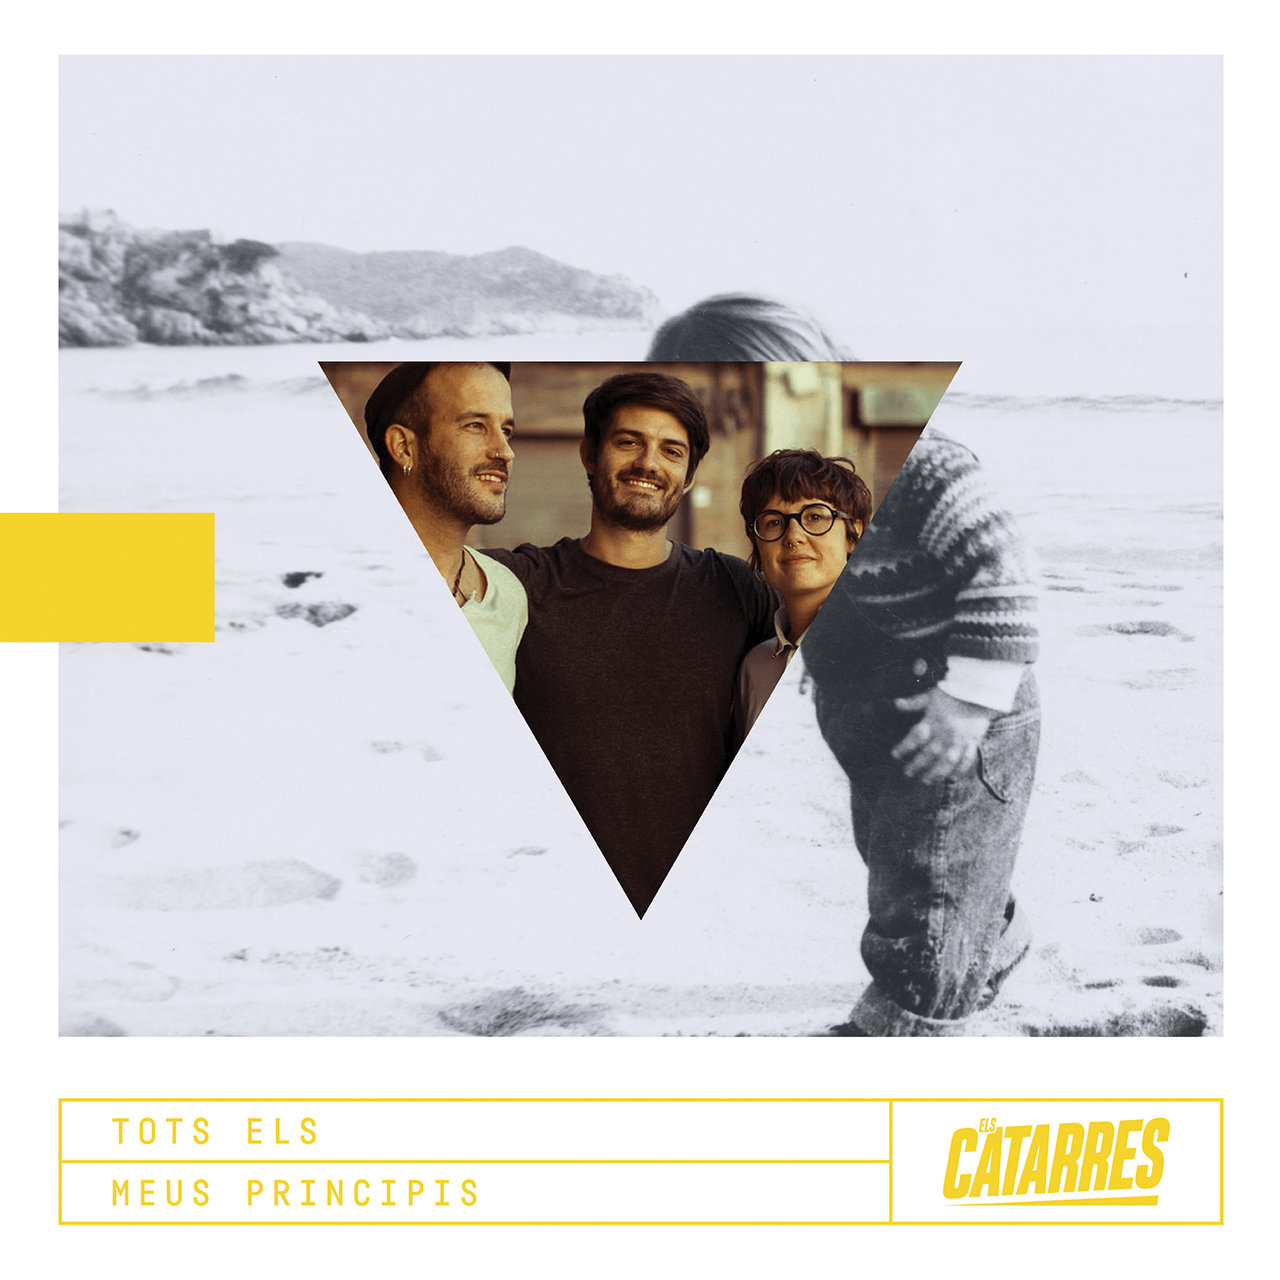 Els Catarres — Perfectes cover artwork